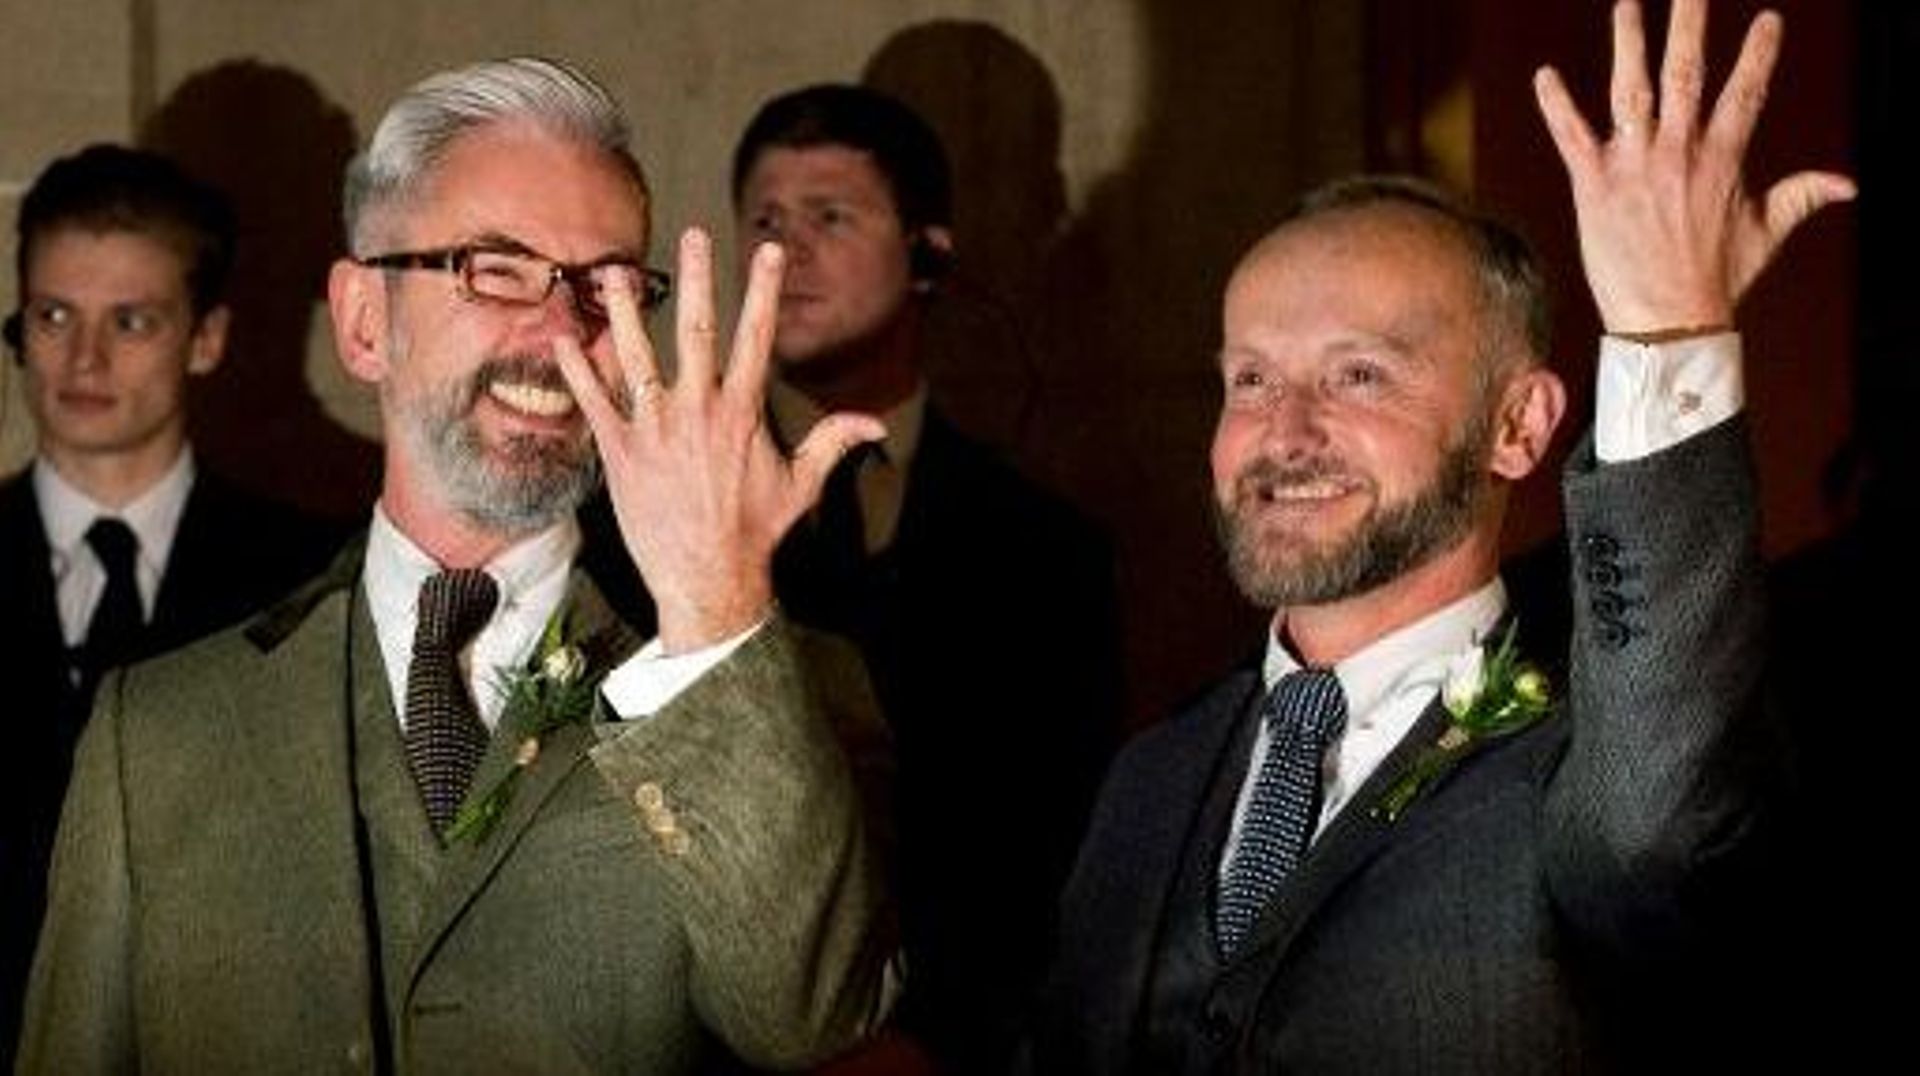 Andrew Wale et Neil Allard montrent leurs alliances à l'issue de leur mariage célébré le 29 mars 2014 à Brighton